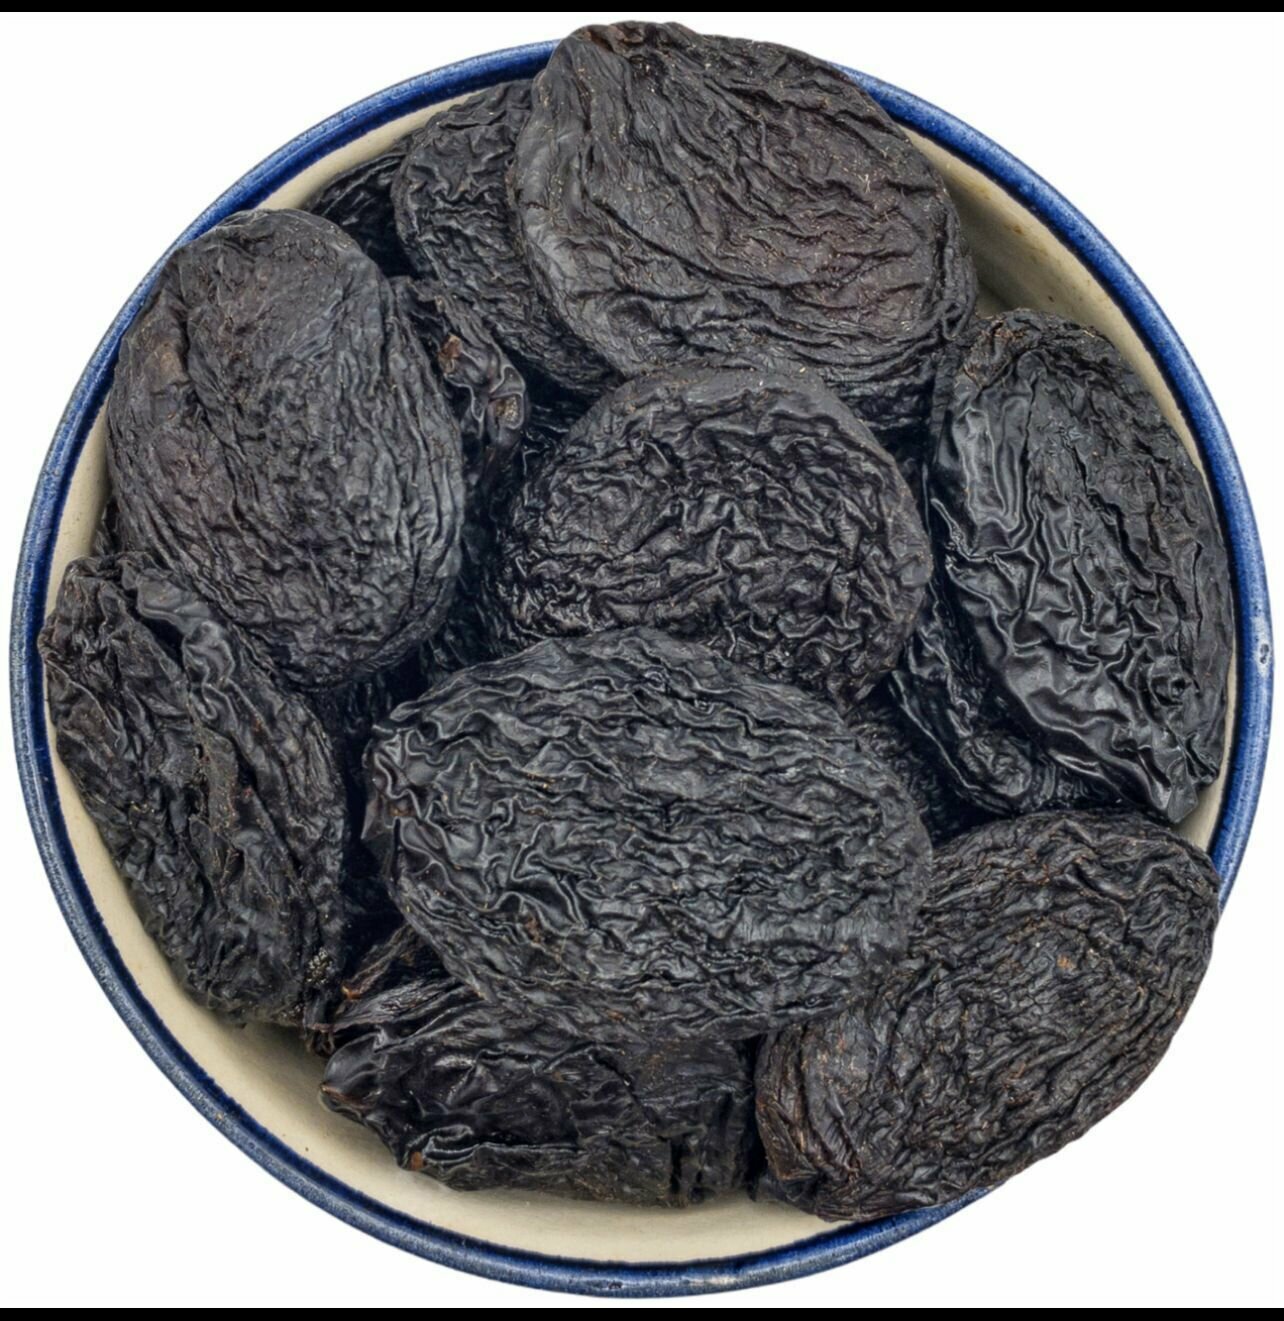 Чернослив натуральный без консервантов, высший сорт, Армения 1 кг